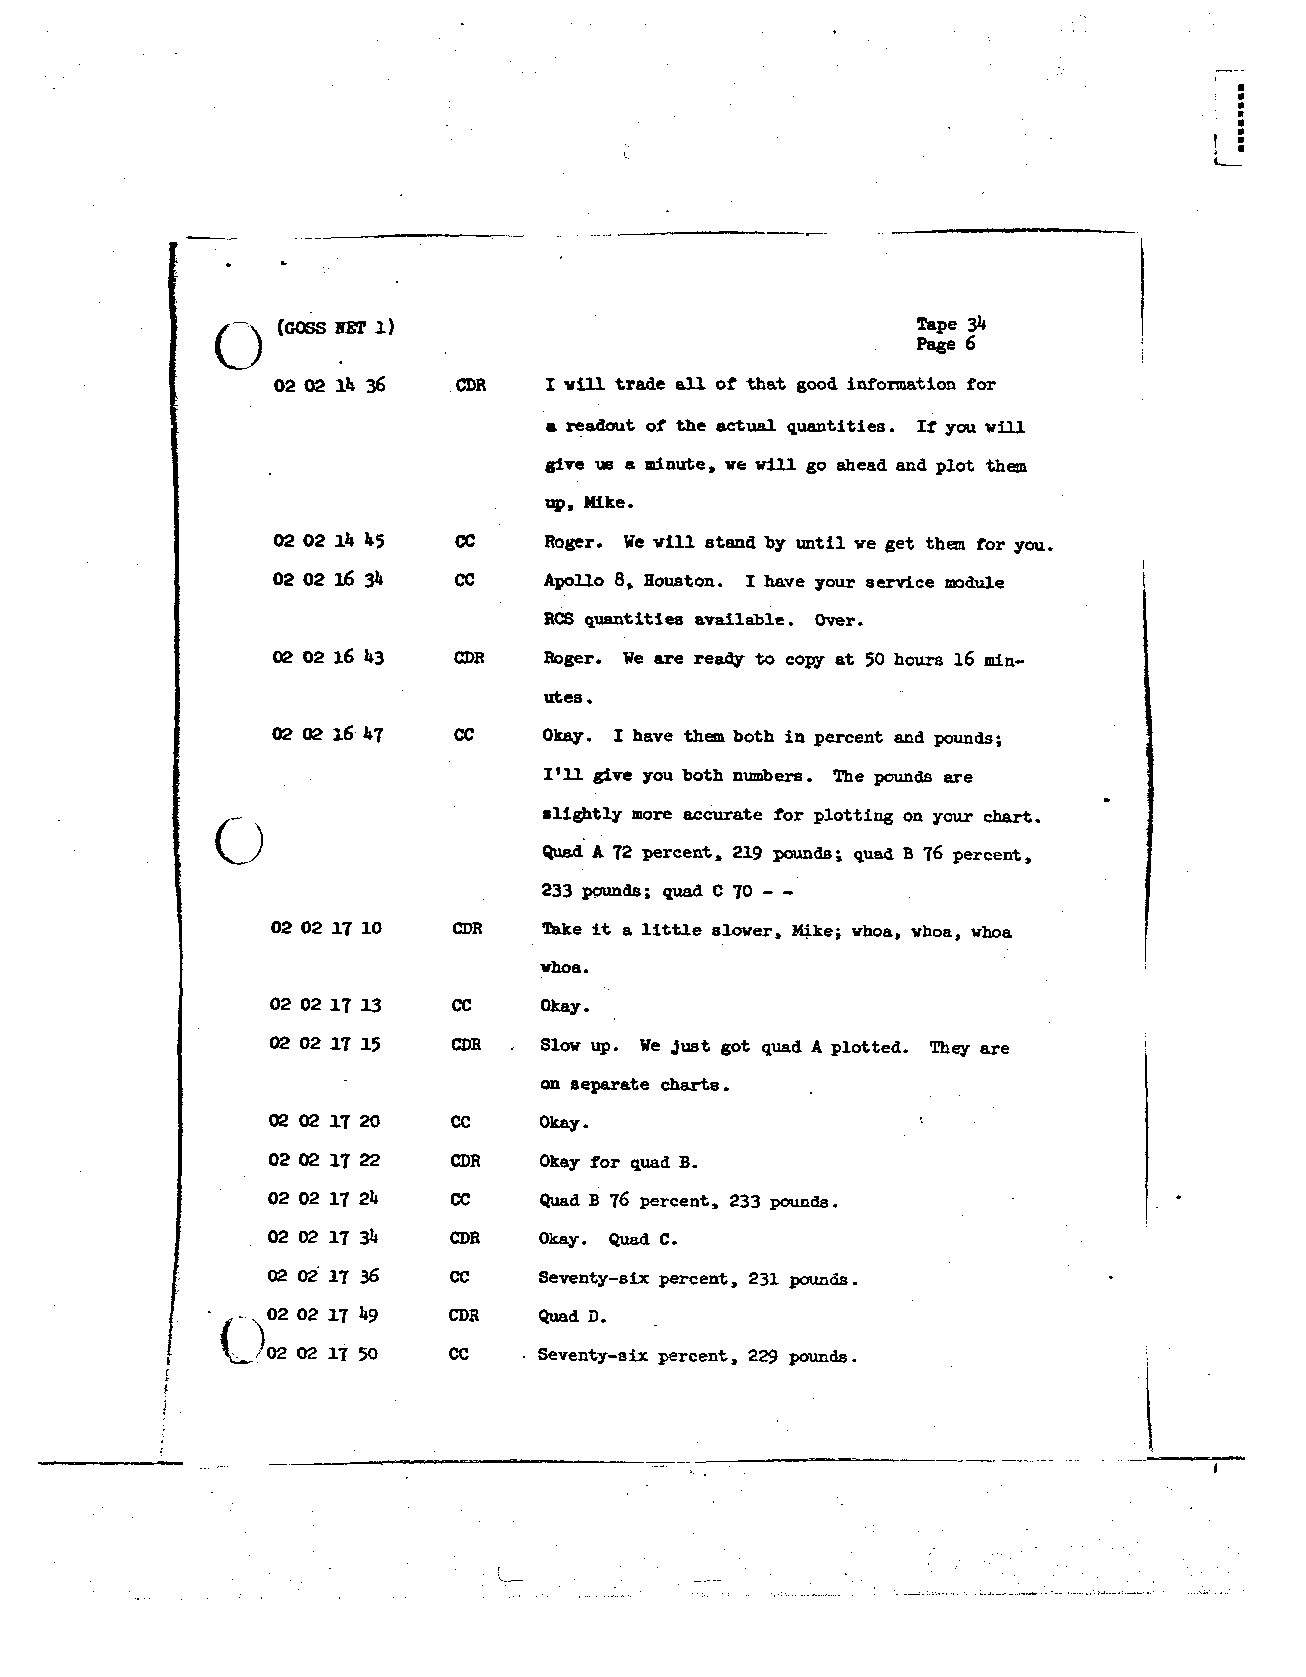 Page 262 of Apollo 8’s original transcript